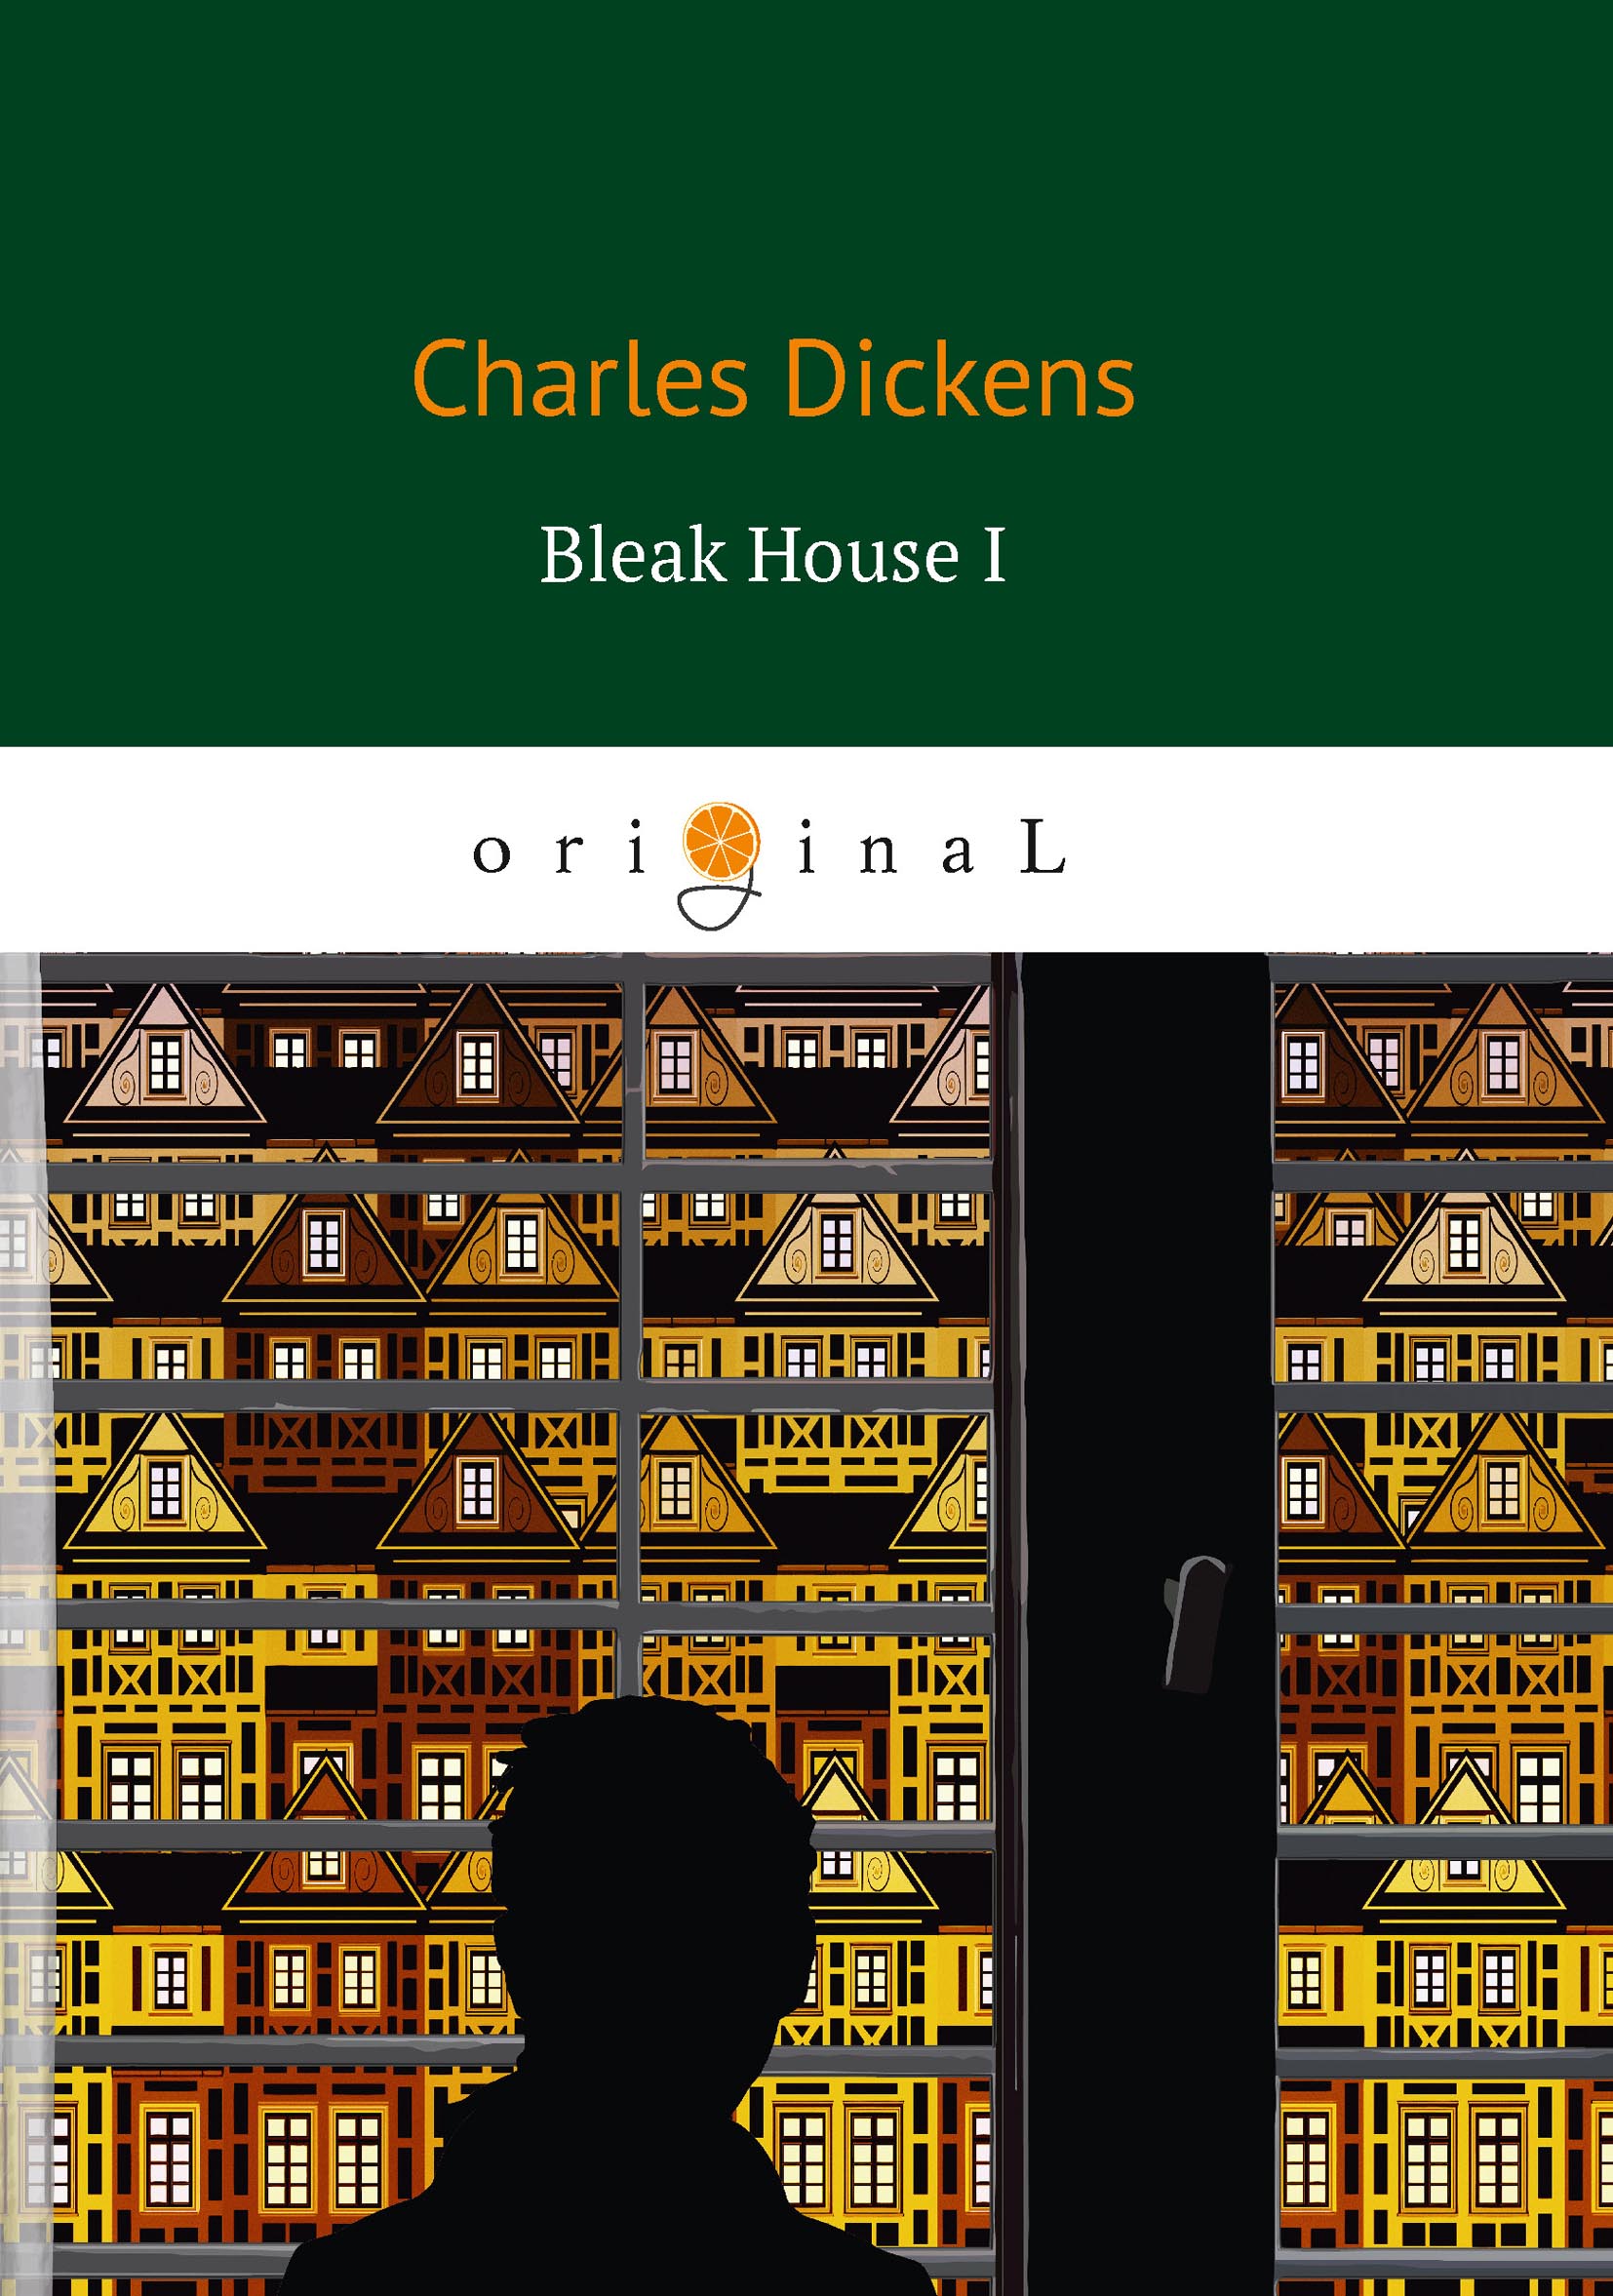 Bleak House I. Charles Dickens